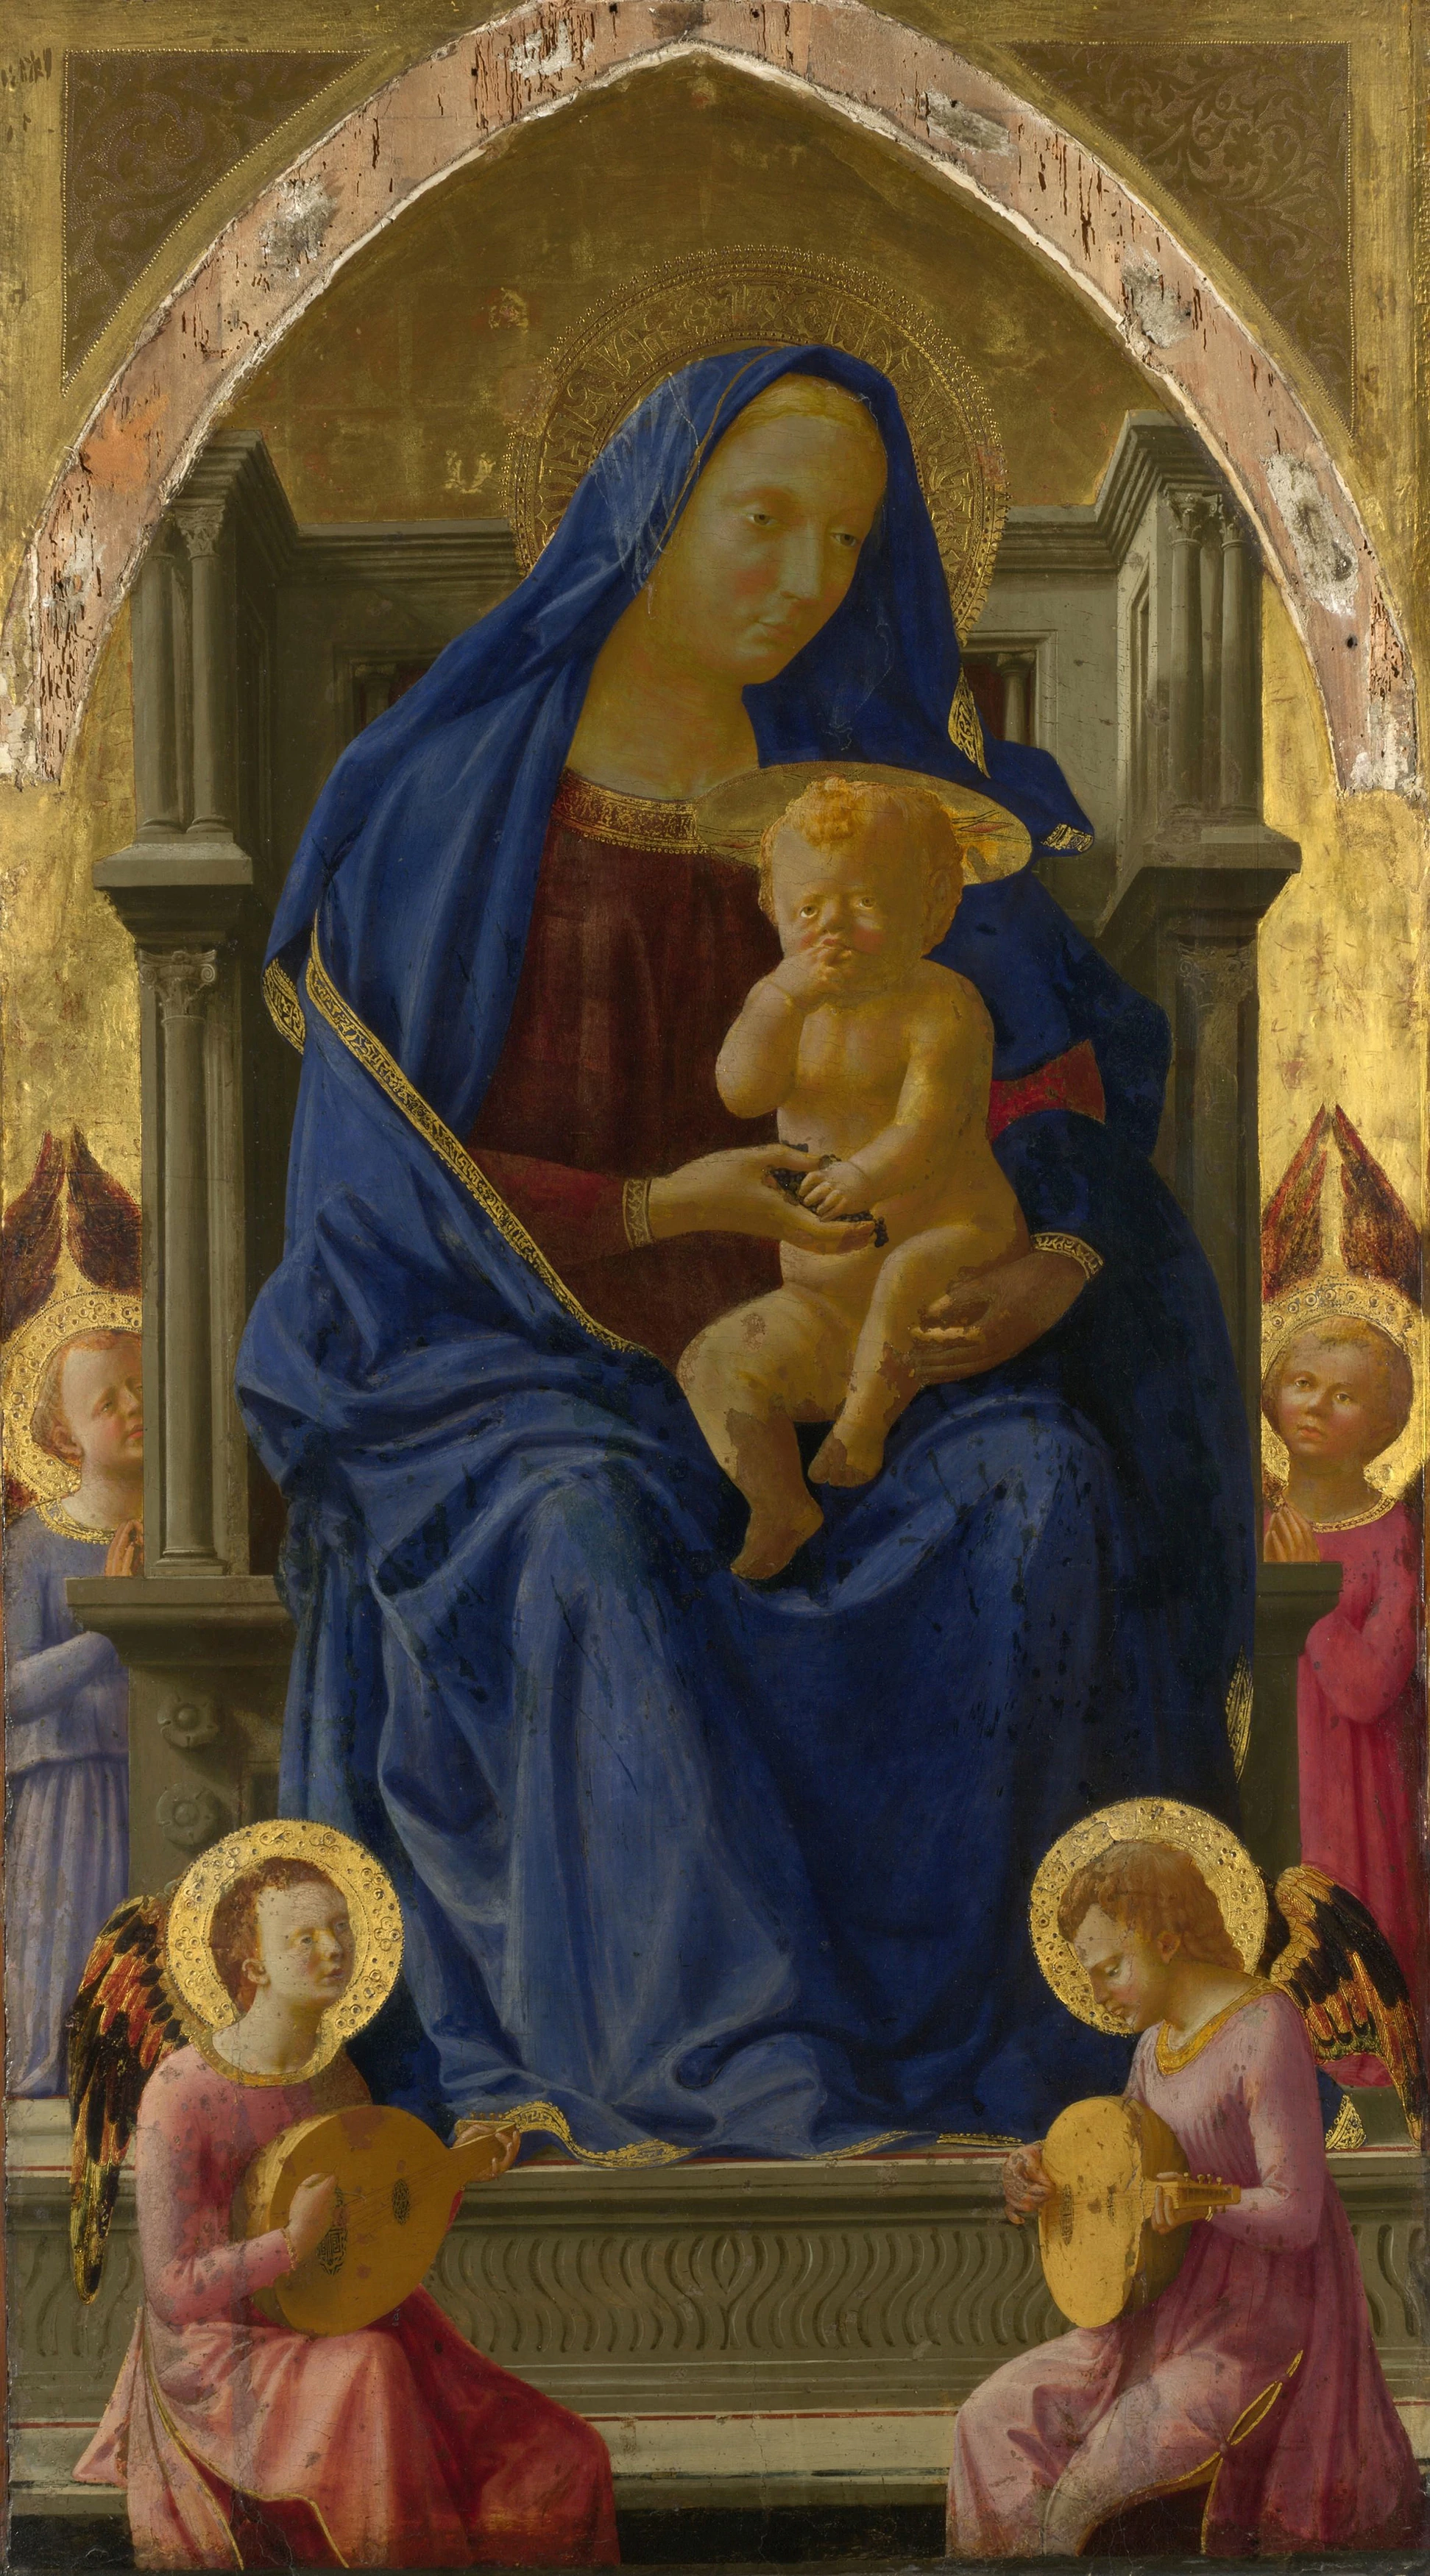 The Virgin and Child, Masaccio